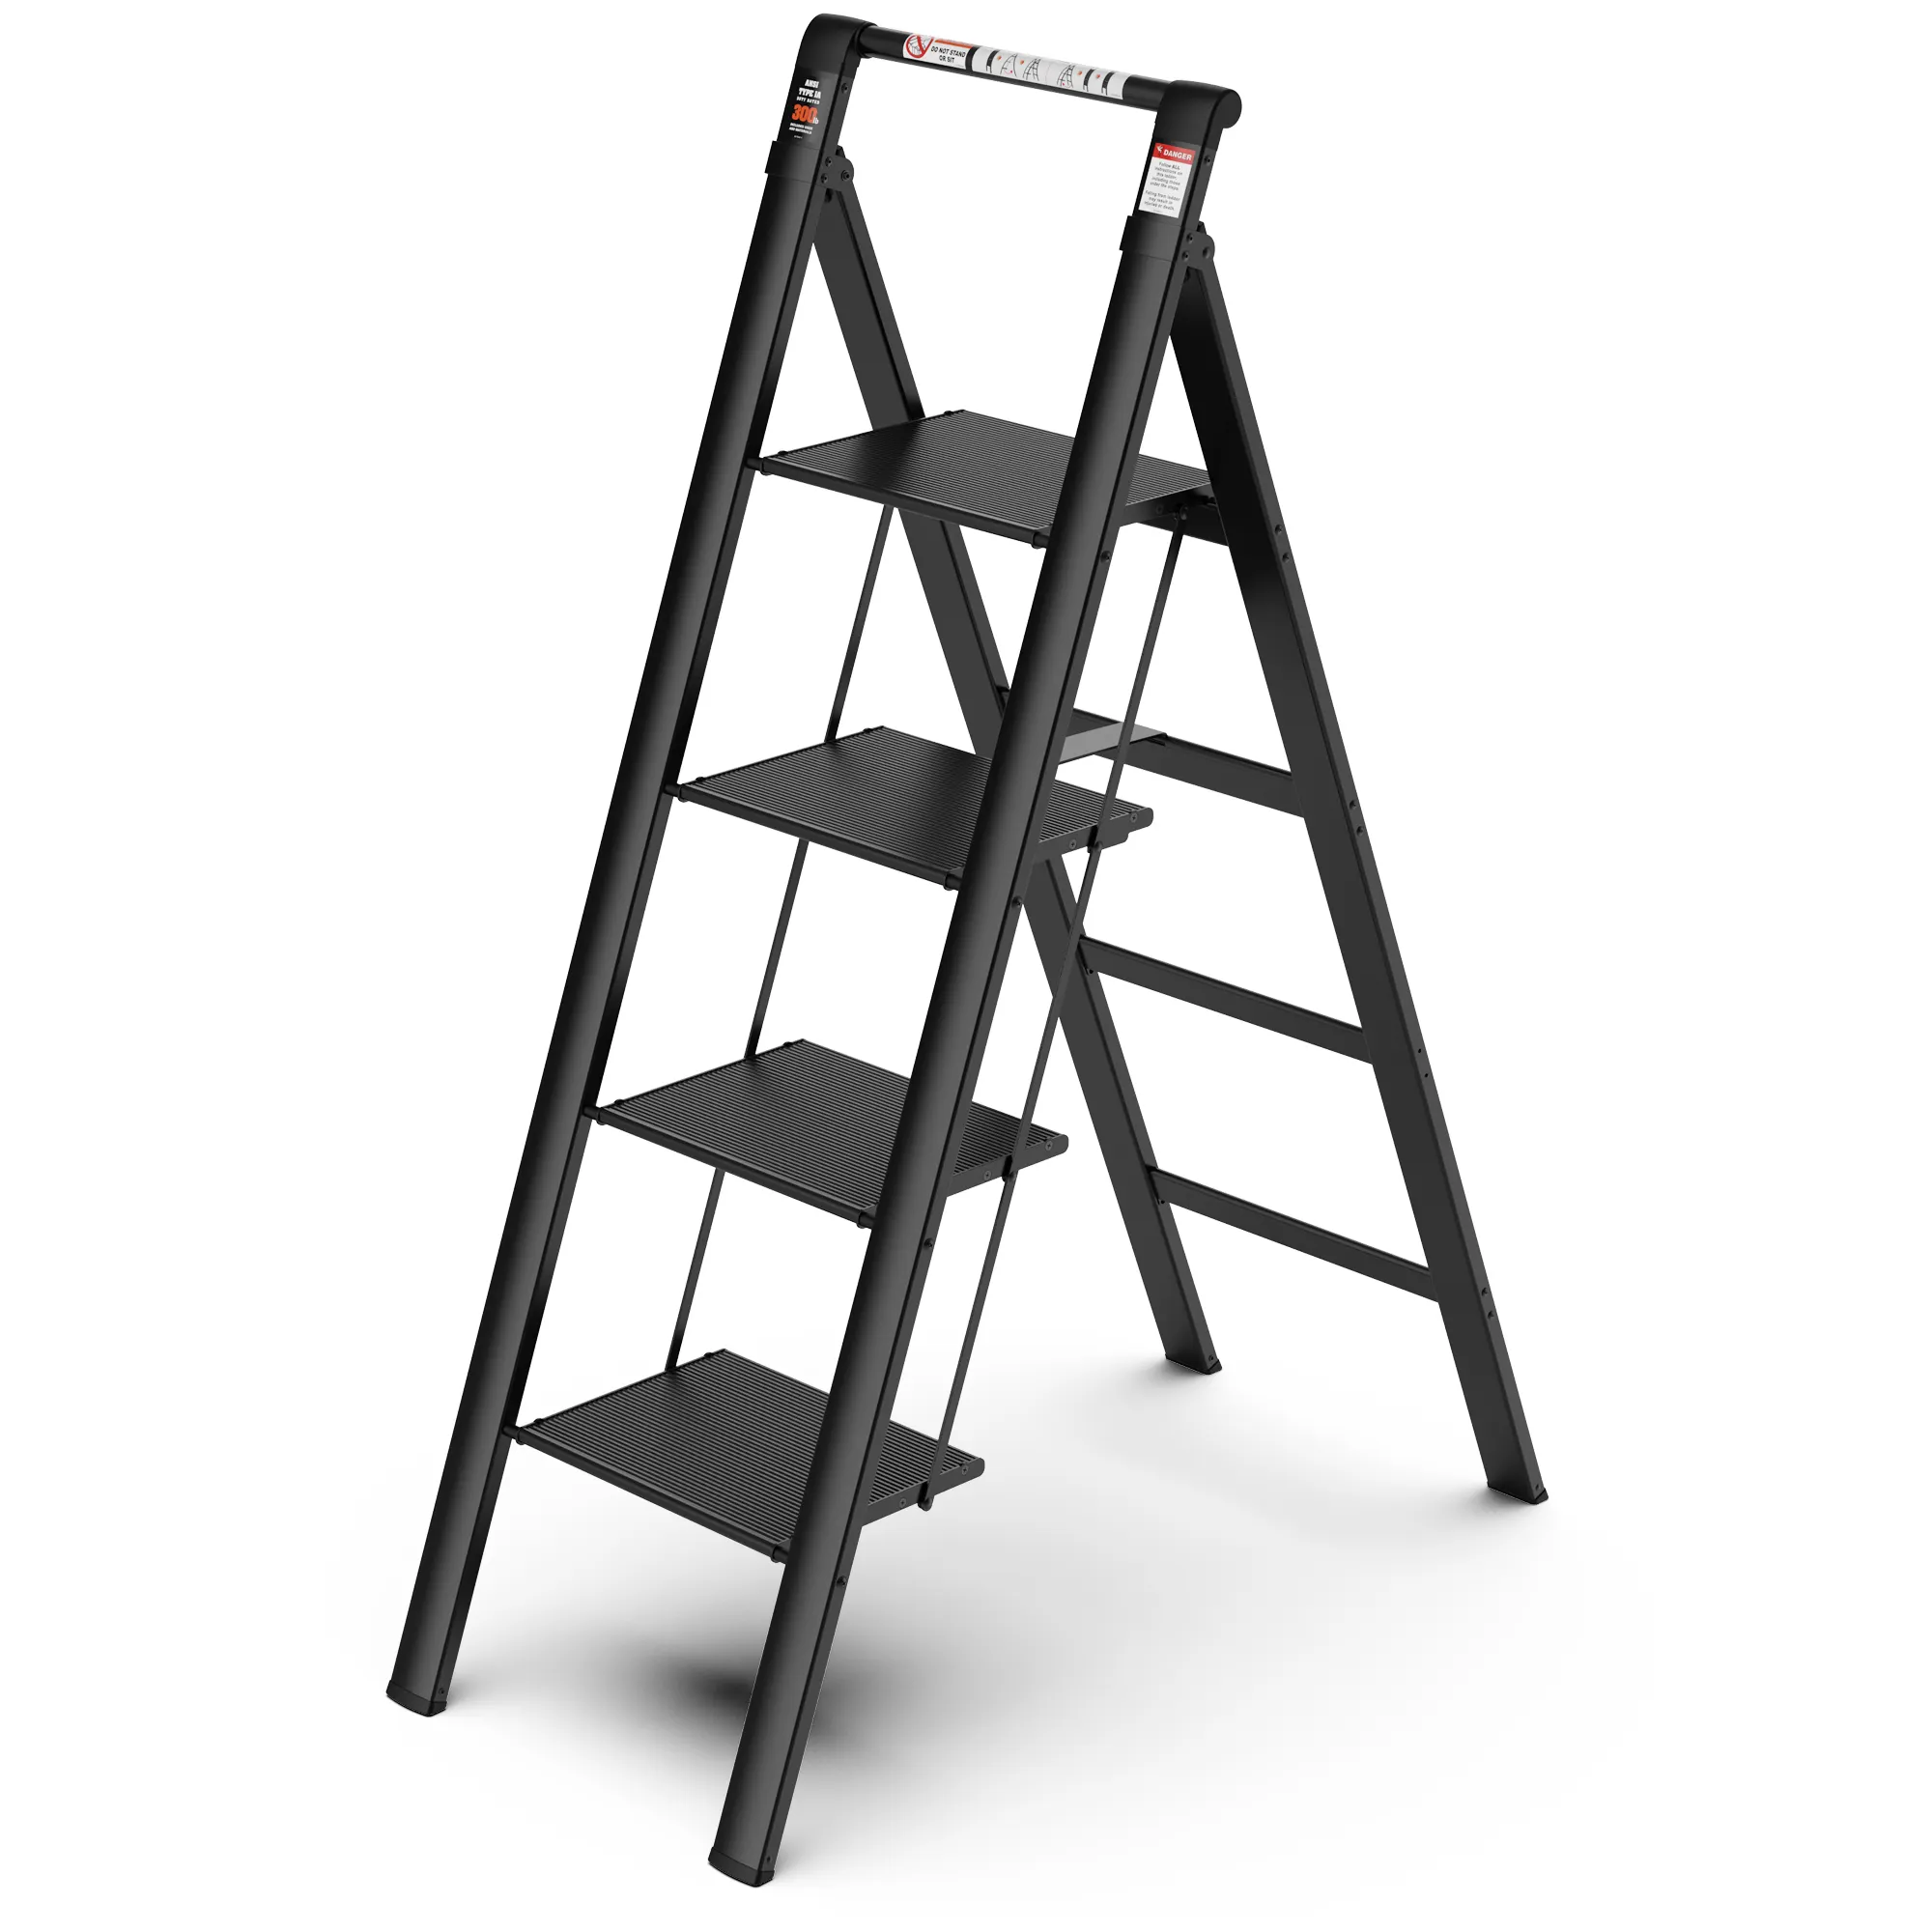 Alumínio de alta qualidade 4 Step Ladder Stool Com corrimão retrátil e Anti-Slip Wide Pedal Safety Household Slim Ladder